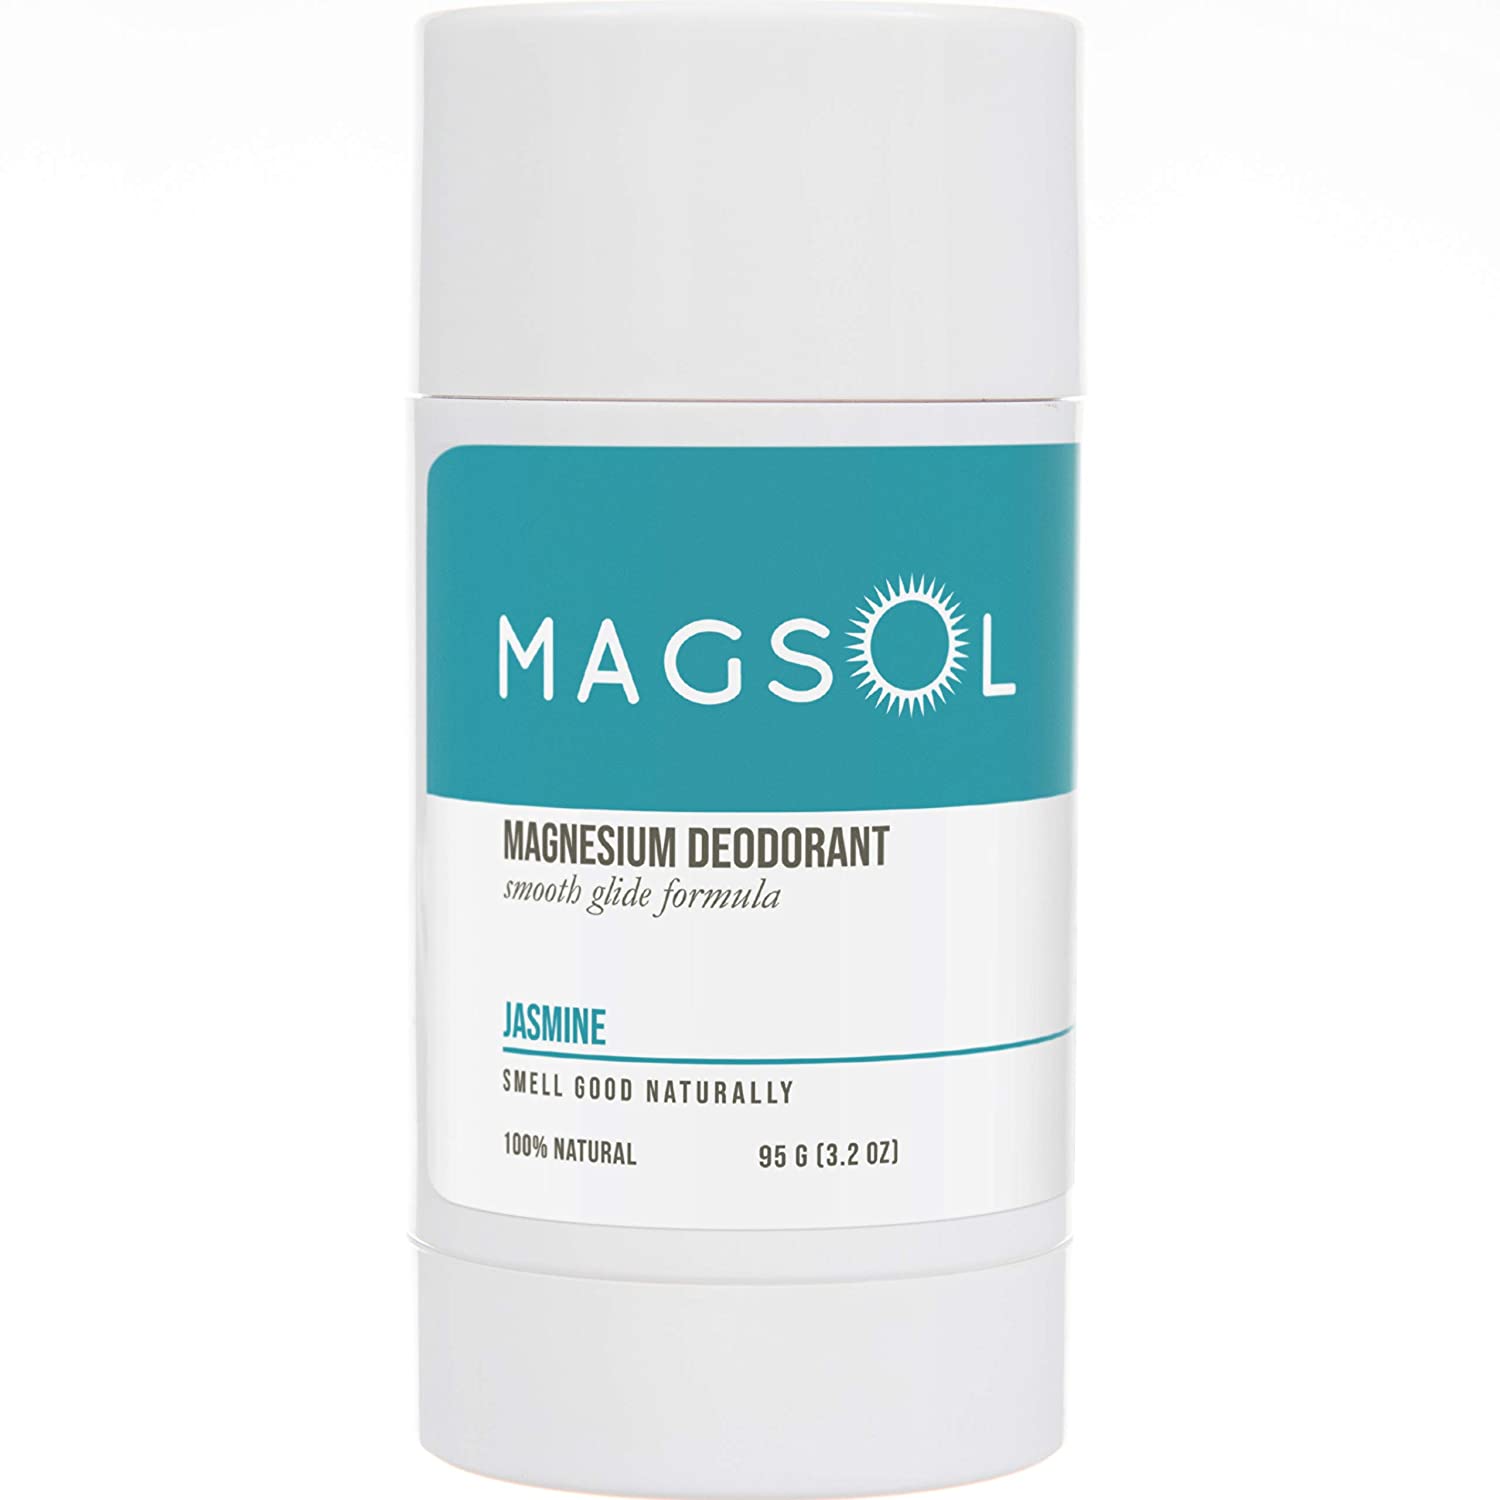 
MAGSOL Magnesium Deodorant
